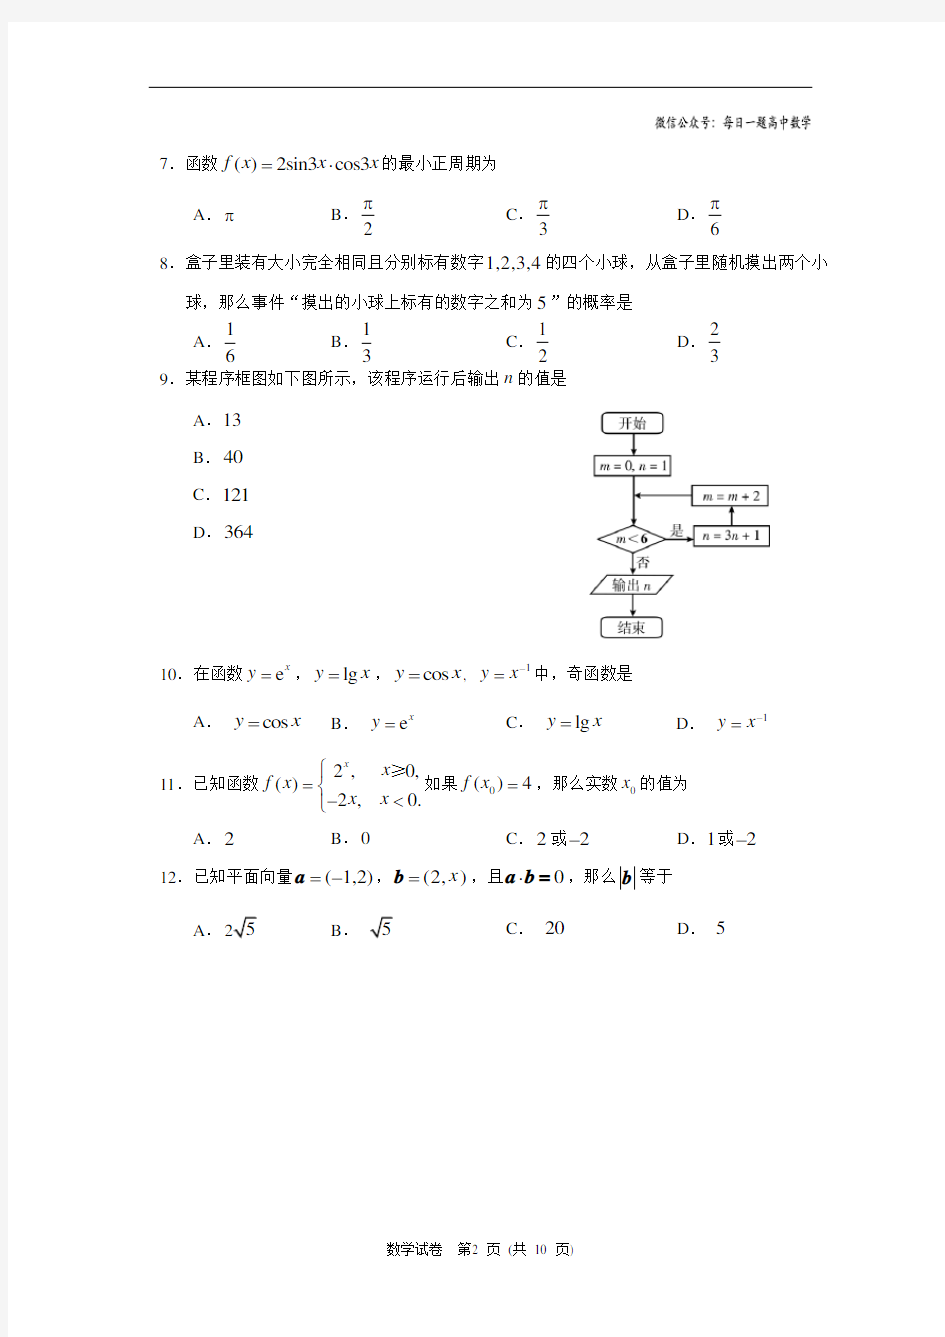 2014年北京市春季普通高中会考数学试题(含答案)